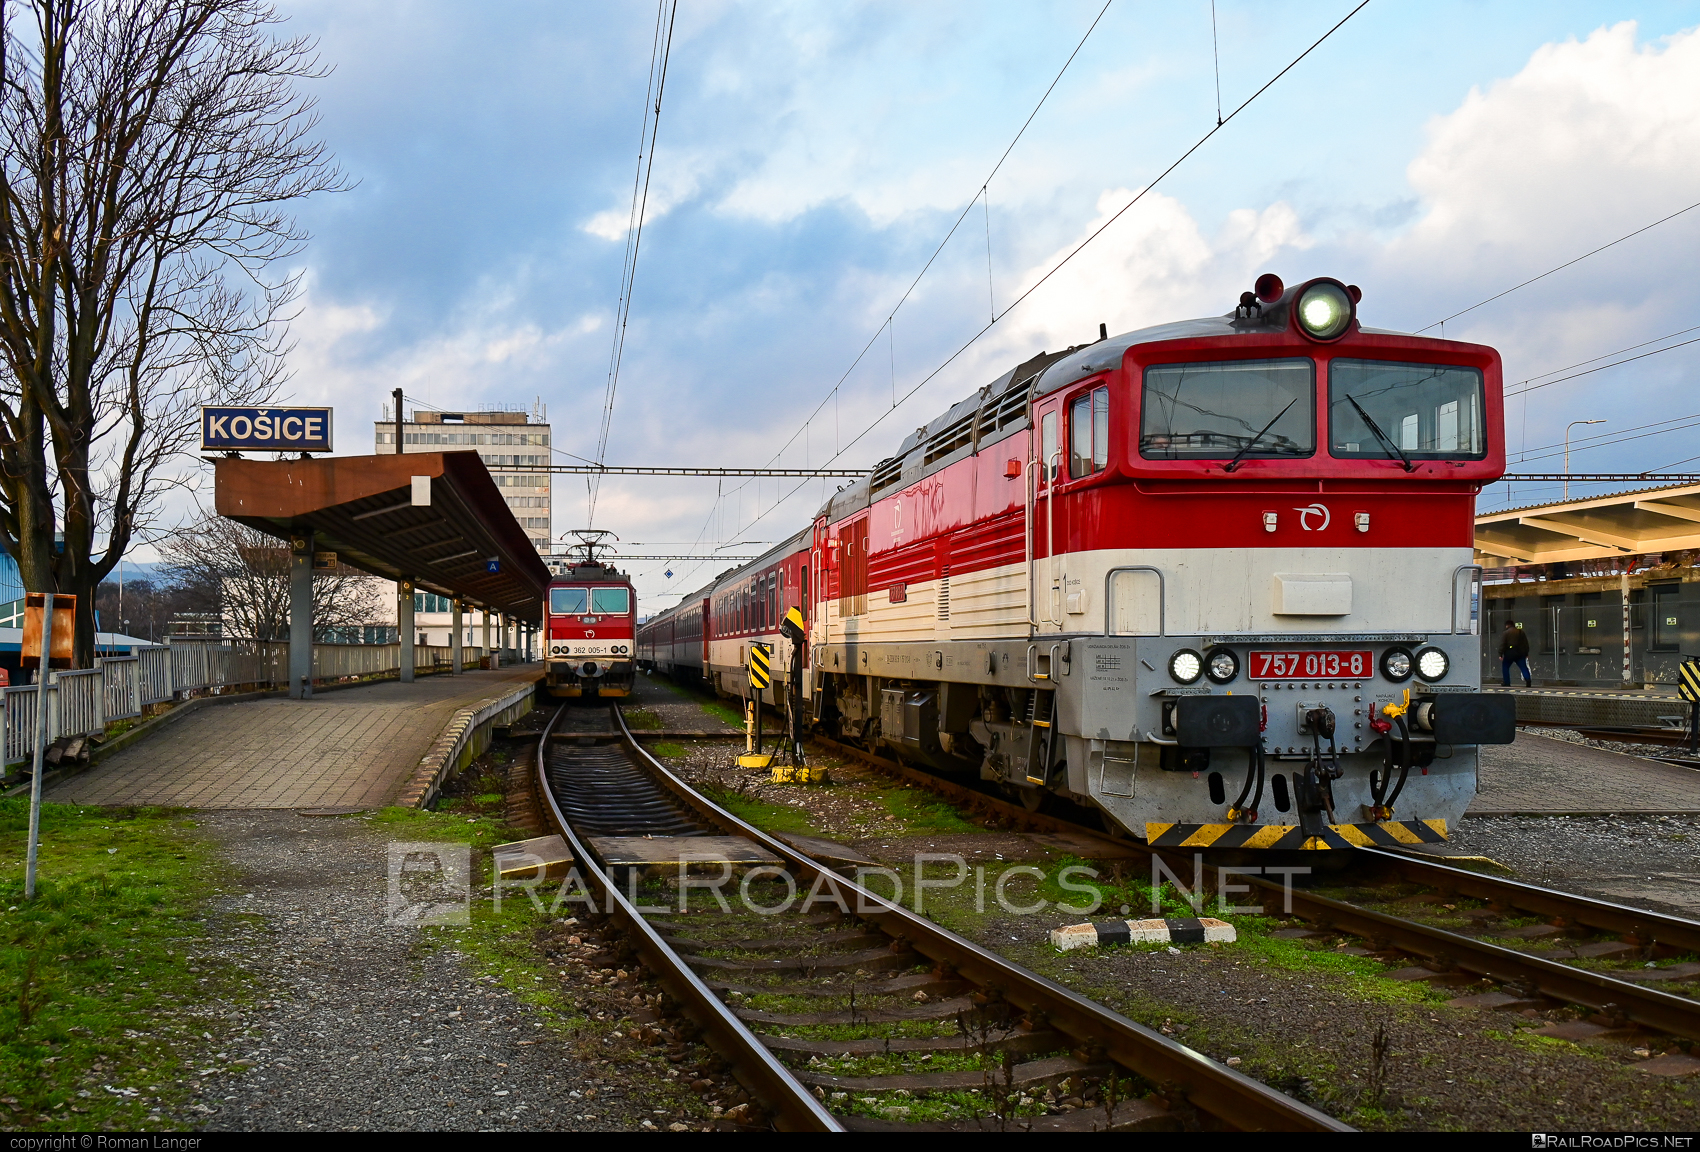 ŽOS Zvolen Class 757 - 757 013-8 operated by Železničná Spoločnost' Slovensko, a.s. #ZeleznicnaSpolocnostSlovensko #brejlovec #locomotiveclass757 #okuliarnik #zoszvolen #zssk